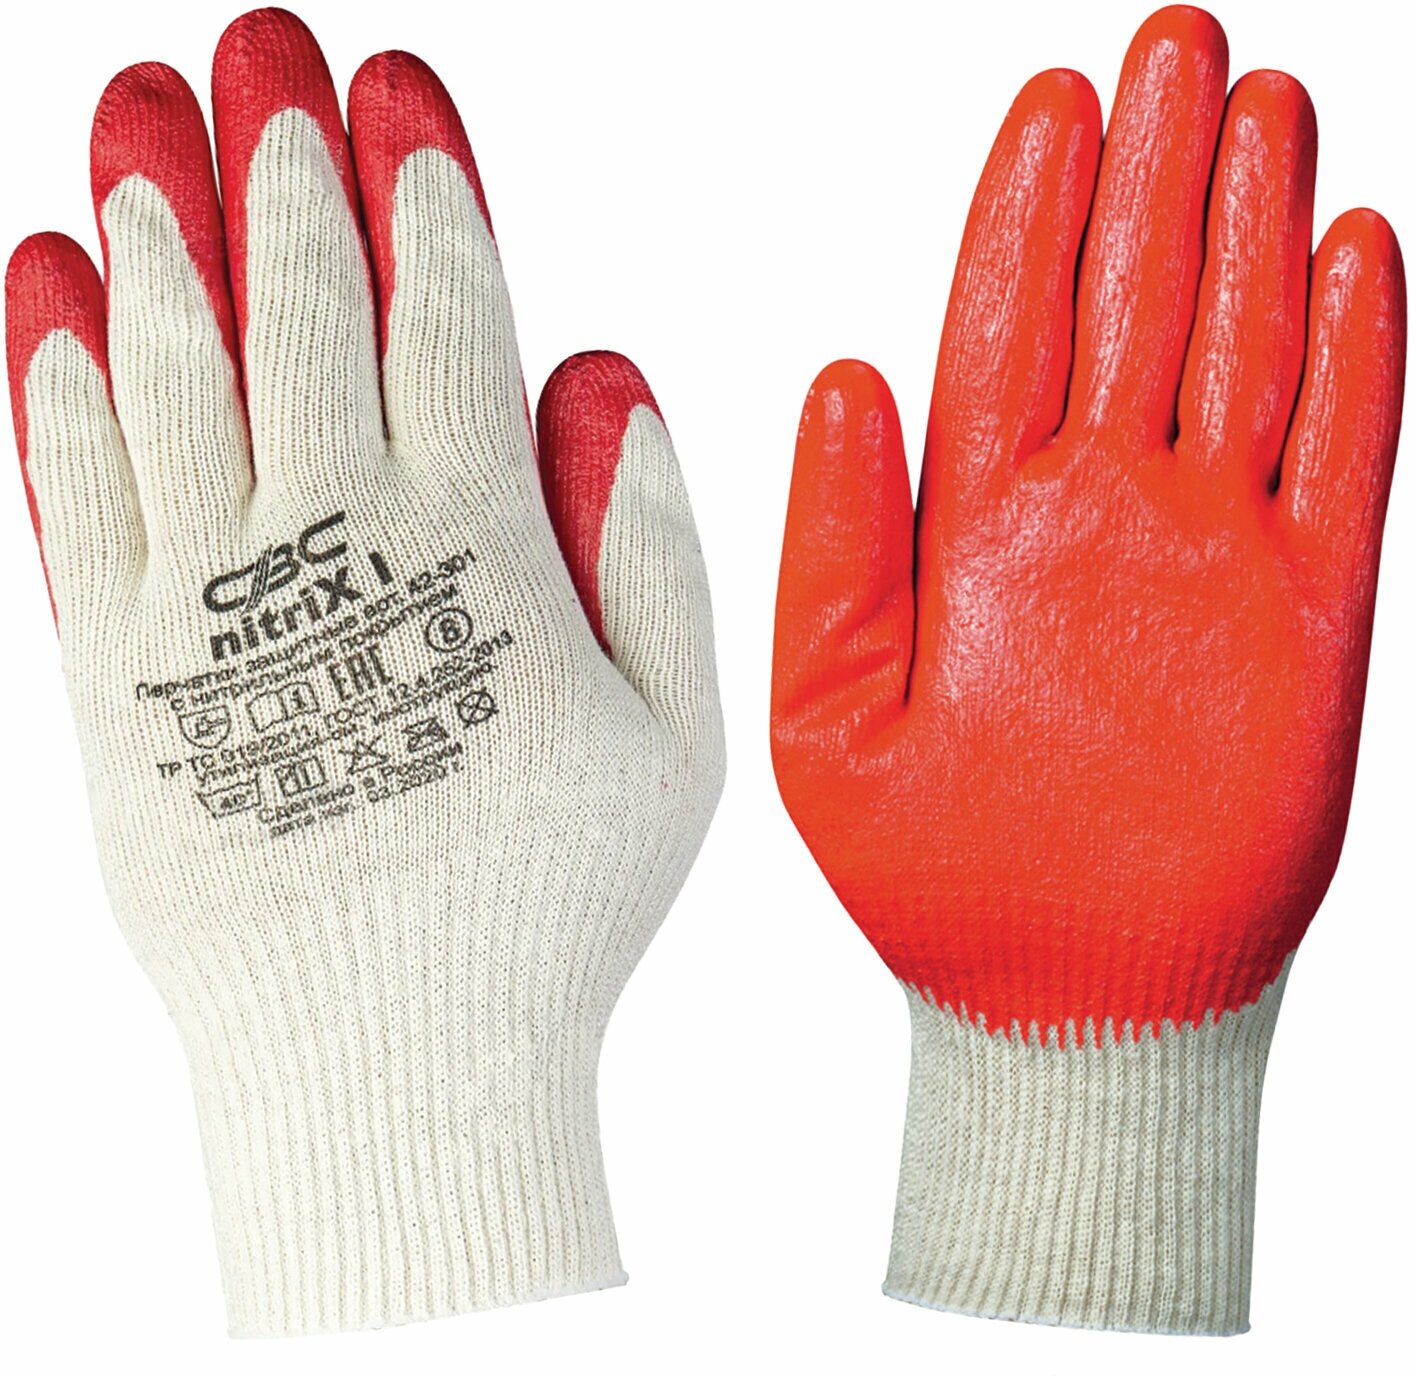 Перчатки защитные СВС хлопчатобумажные, Нитрикс маслобензостойкие, 1 пара, 34-36 г, размер 8, облив вспененный нитрил, повышенная износостойкость